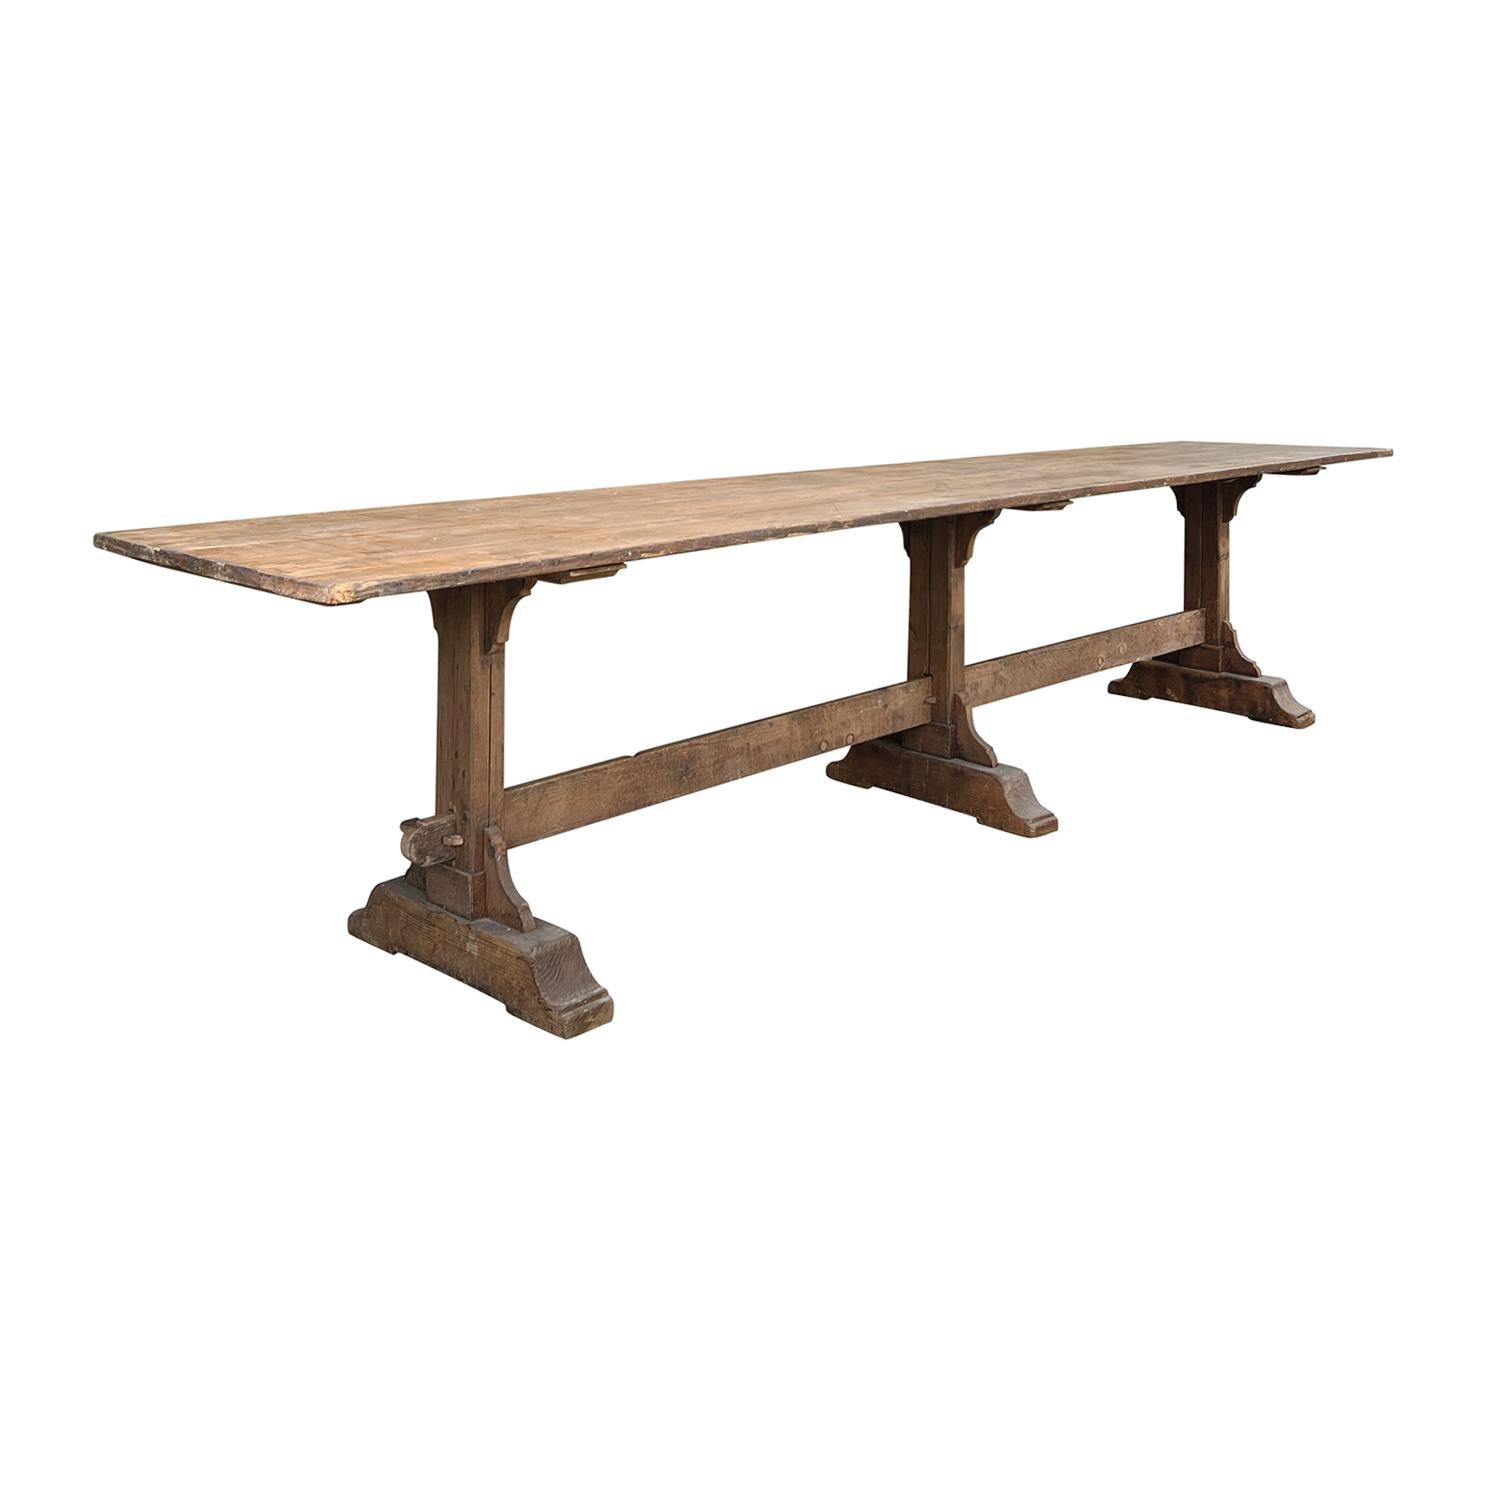 Cette table ancienne surdimensionnée en bois de pin massif est parfaite pour vos repas décontractés. Elle est en bon état. La table en bois de 11 pieds 11 pouces de long, fabriquée à la main, est dotée d'un plateau de 1 pouce d'épaisseur qui